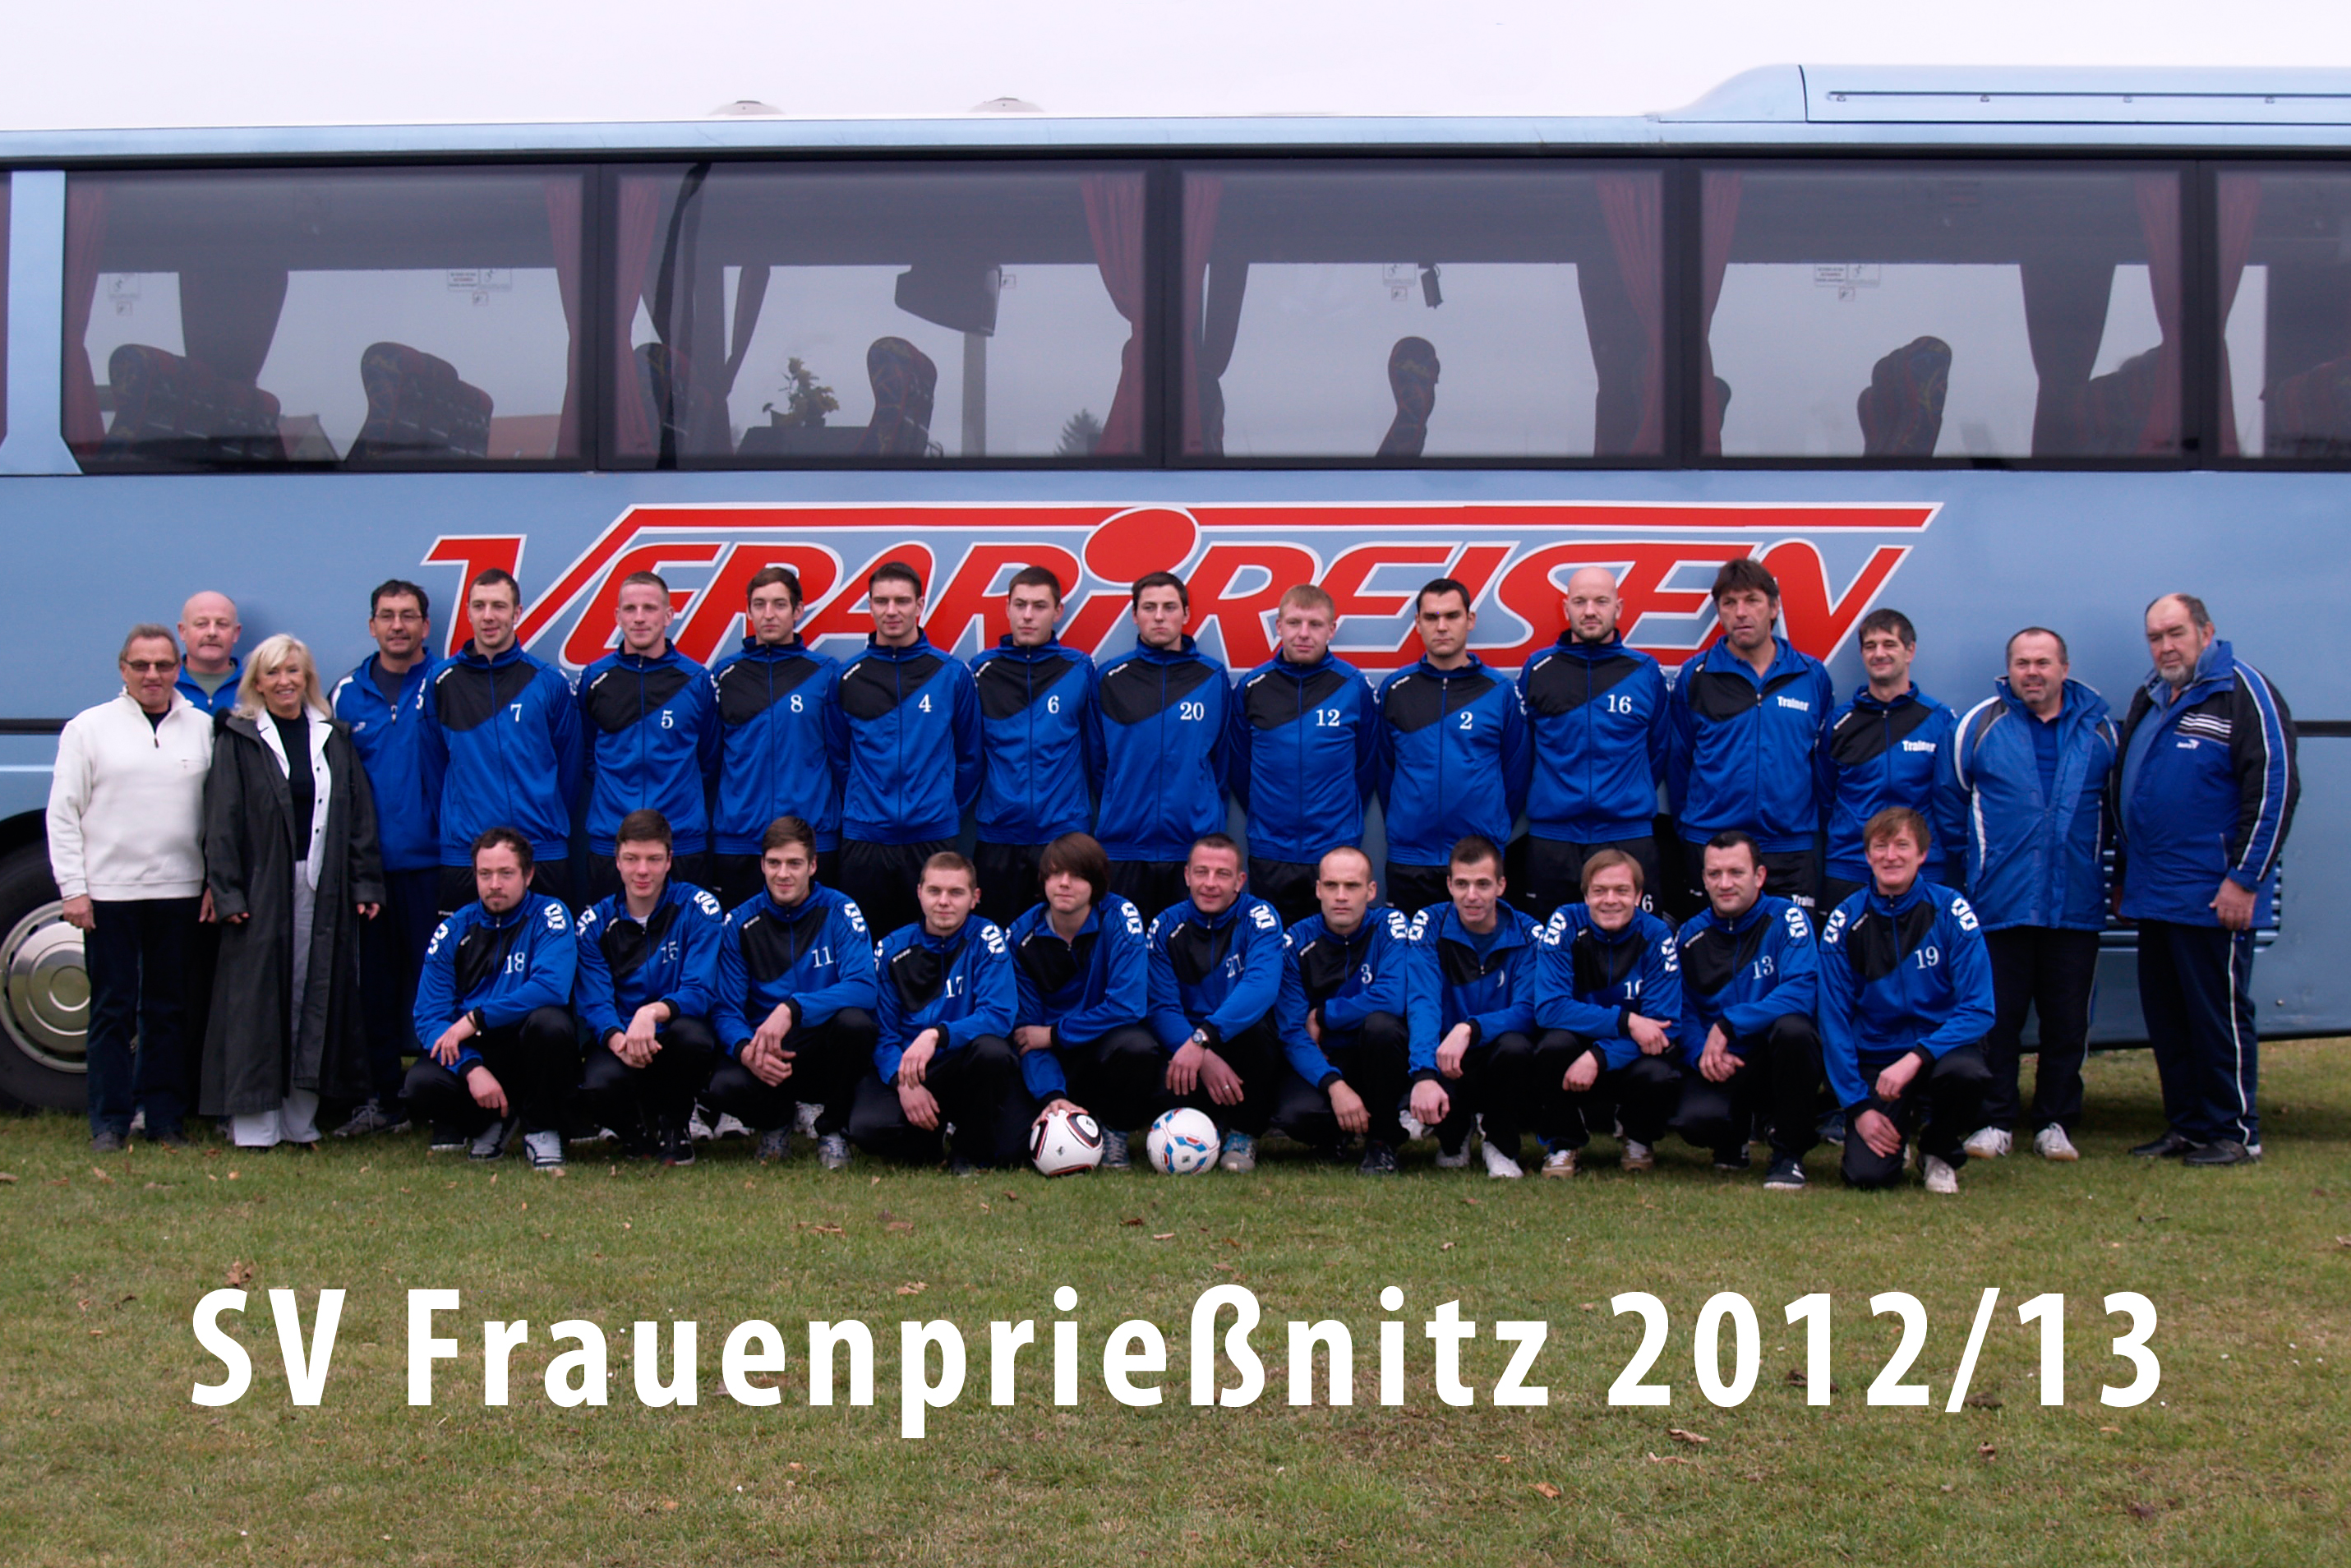 Mannschaftsfoto/Teamfoto von SV Frauenprienitz